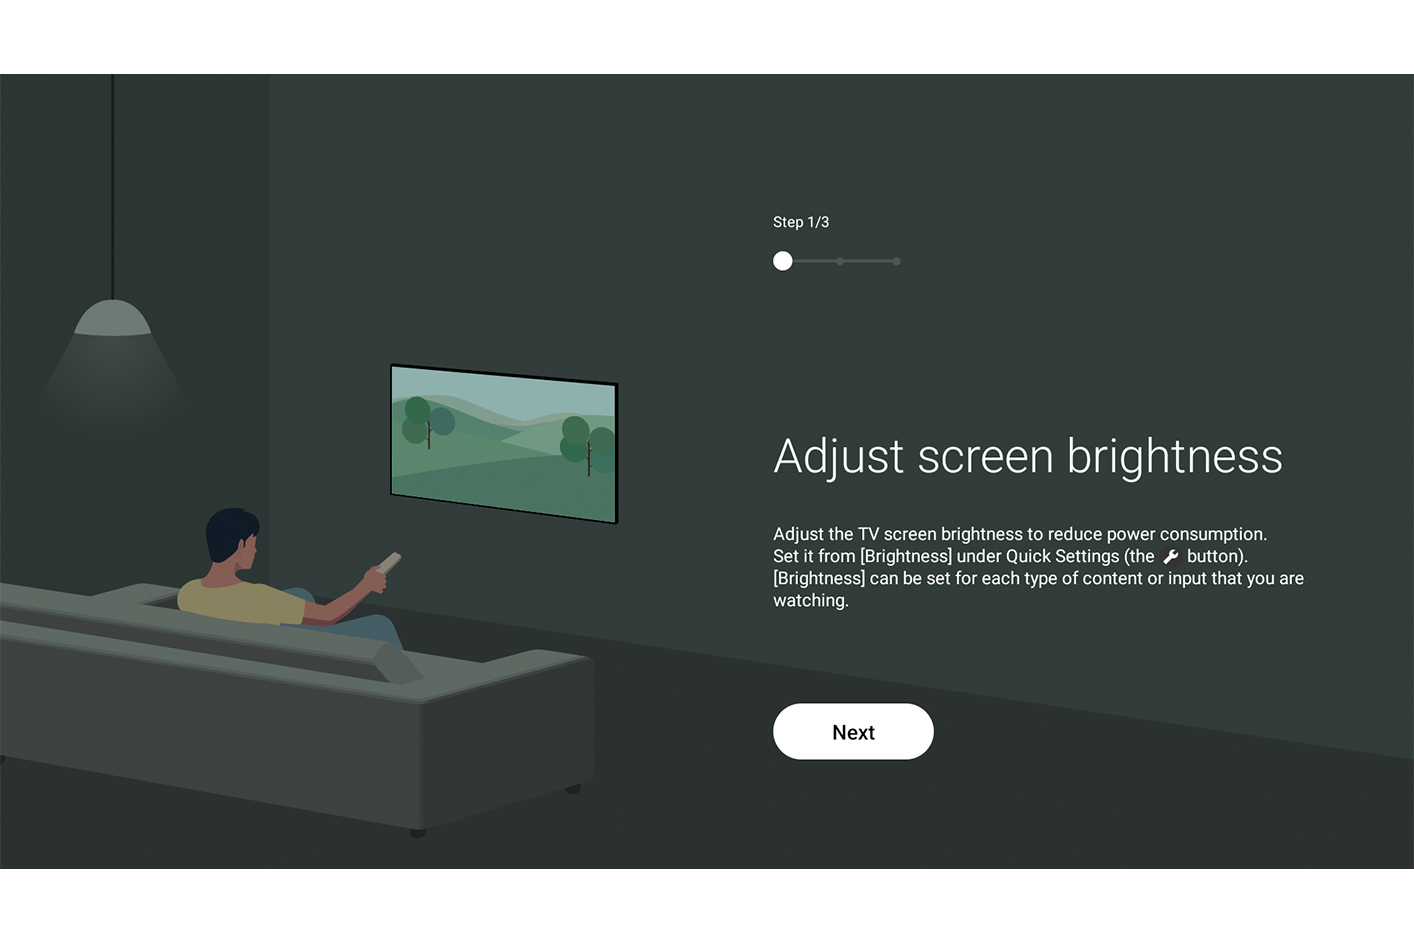 薄暗い部屋でテレビの明るさを調整する男性のイラストが表示されたブラビアのユーザーインターフェース画面。